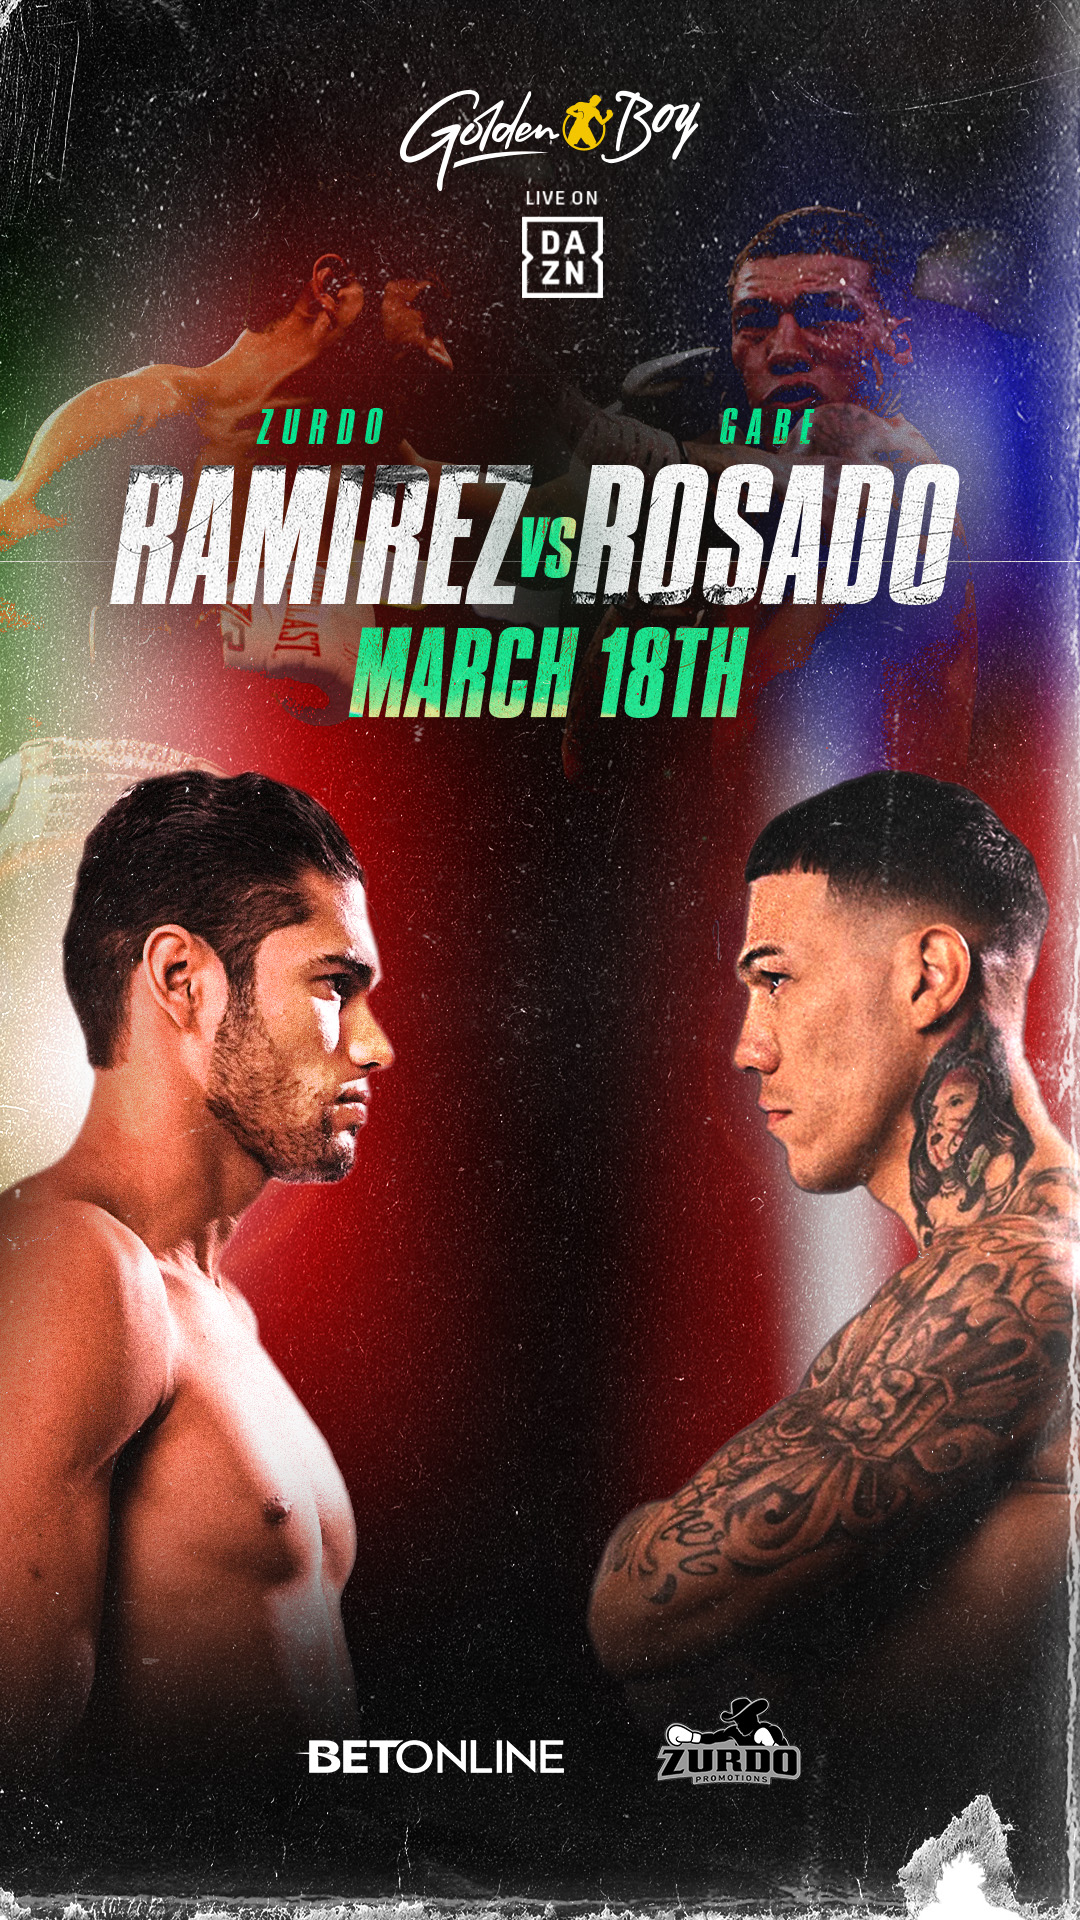 Gilberto “Zurdo” Ramirez faces Gabriel Rosado, plus much more on this week’s schedule!